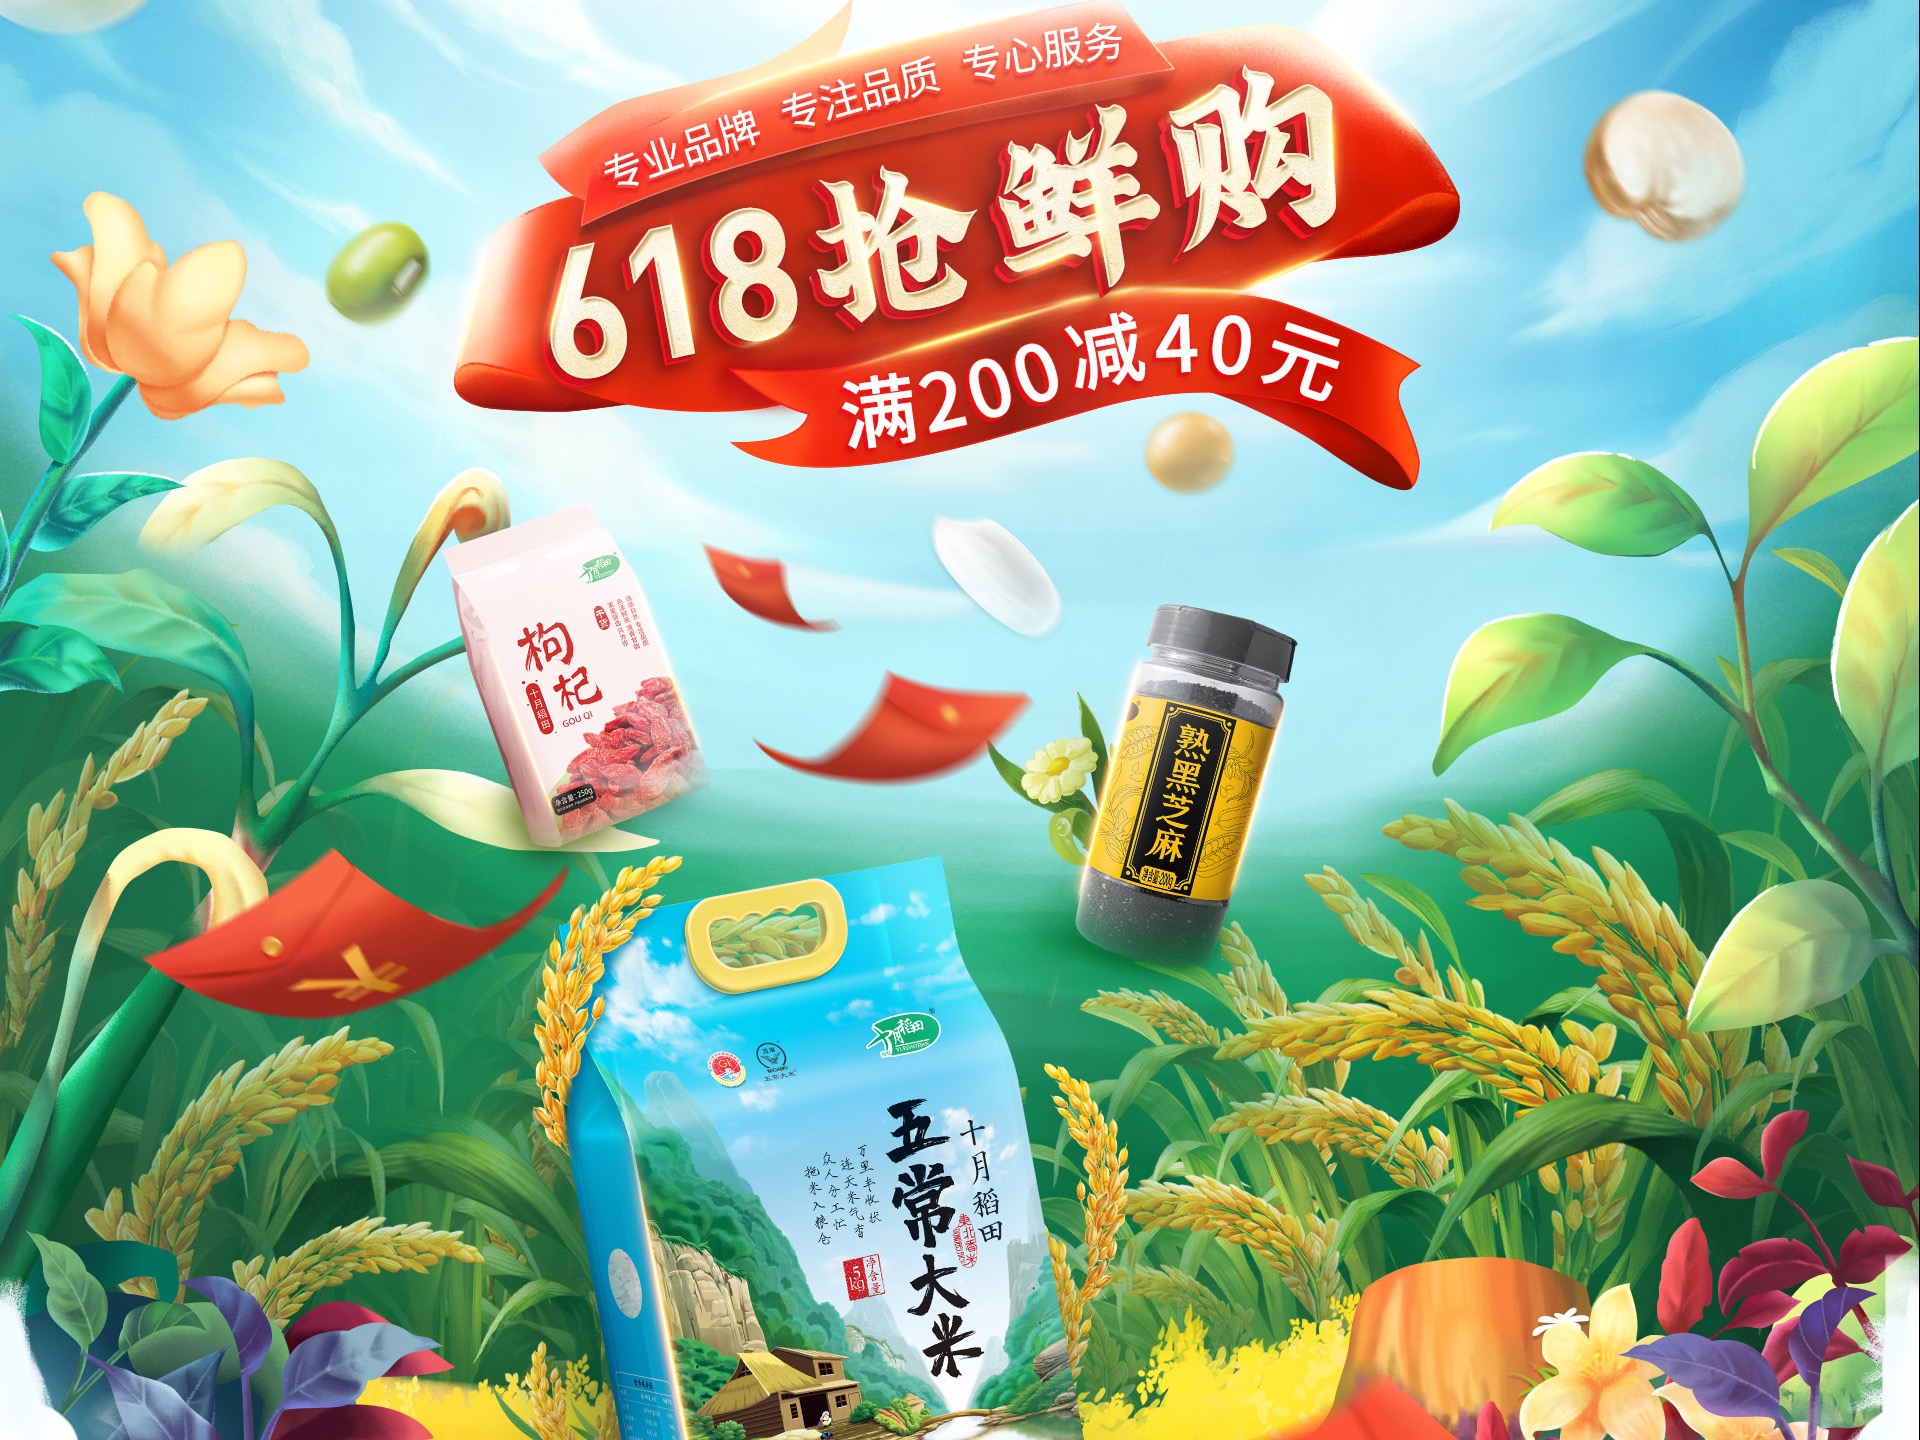 「十月稻田」或将在香港 IPO 上市 | 品牌星球BrandStar